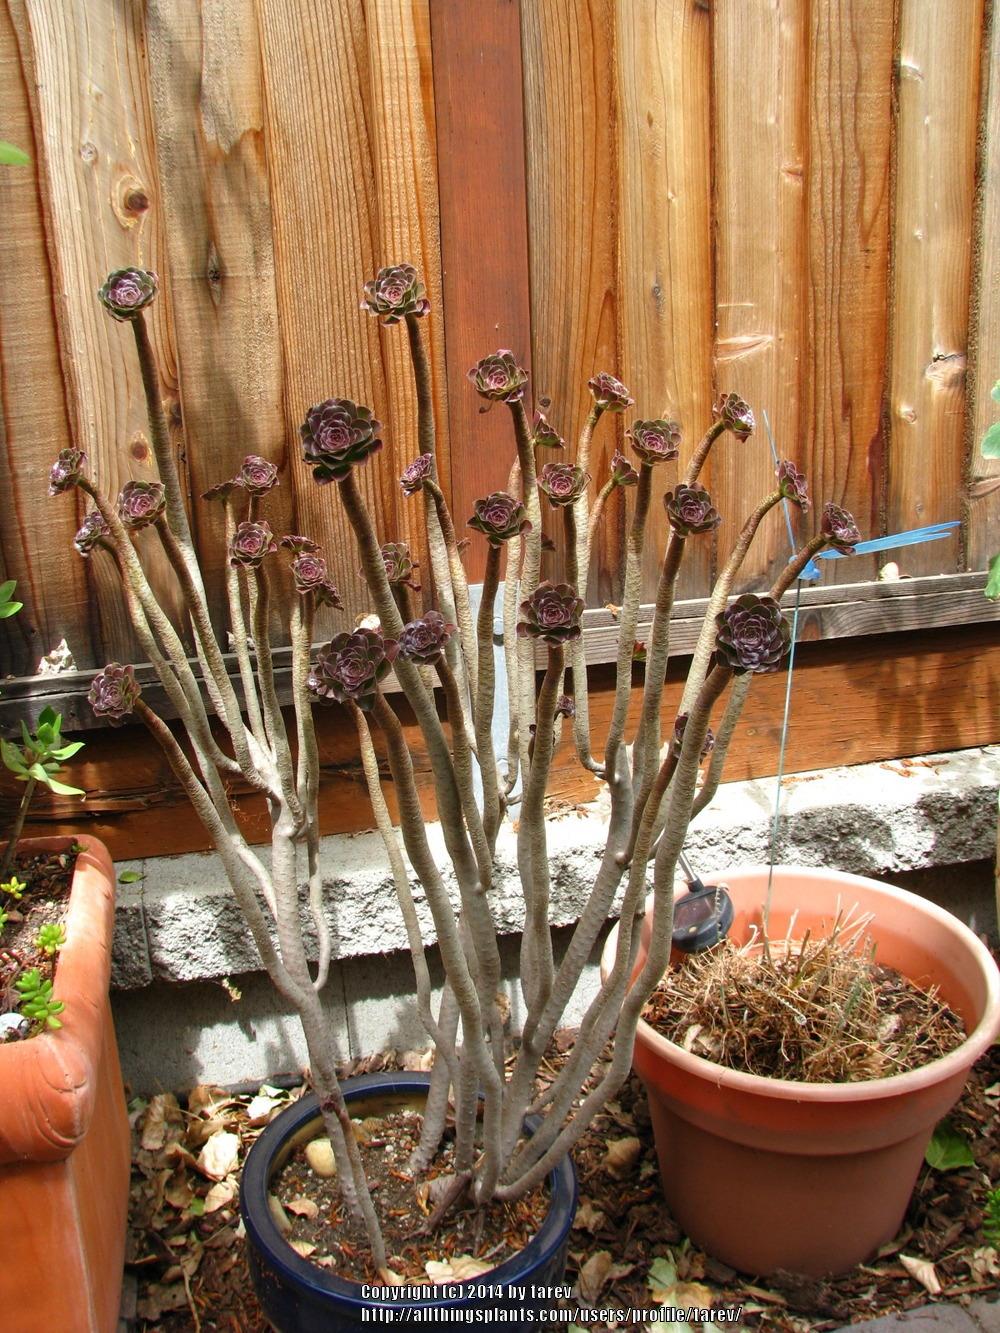 Photo of Aeonium (Aeonium arboreum) uploaded by tarev